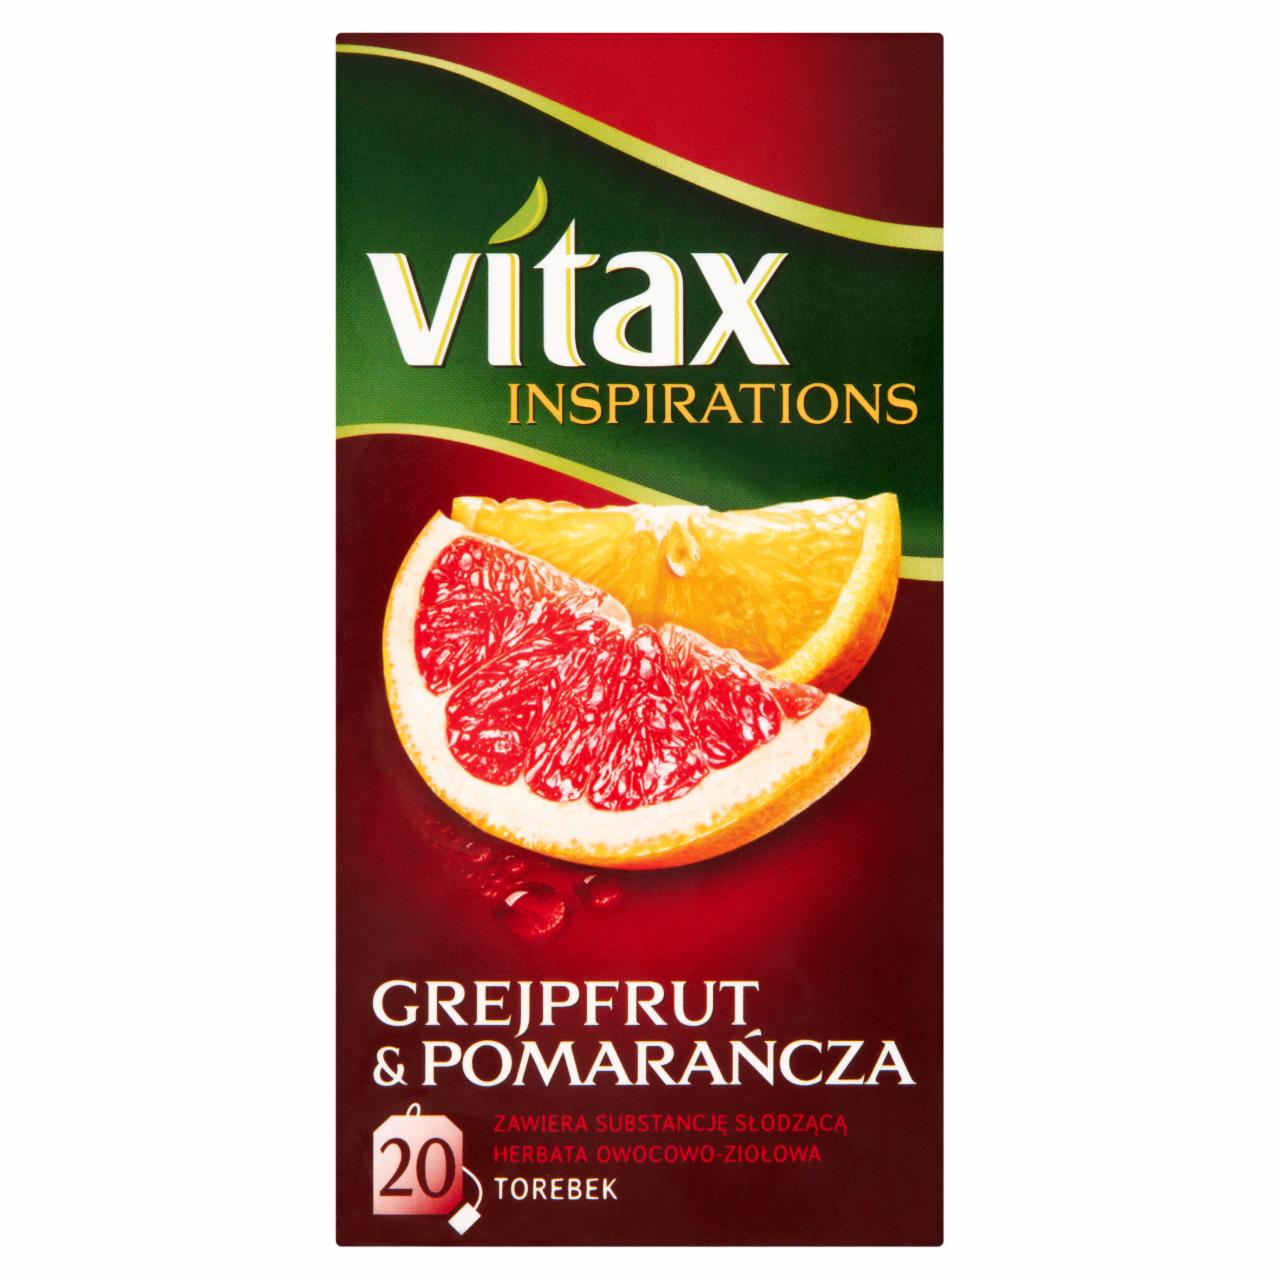 Zdjęcia - Vitax Inspiracje Herbatka owocowo-ziołowa aromatyzowana grejpfrut & pomarańcza 40 g (20 x 2 g)